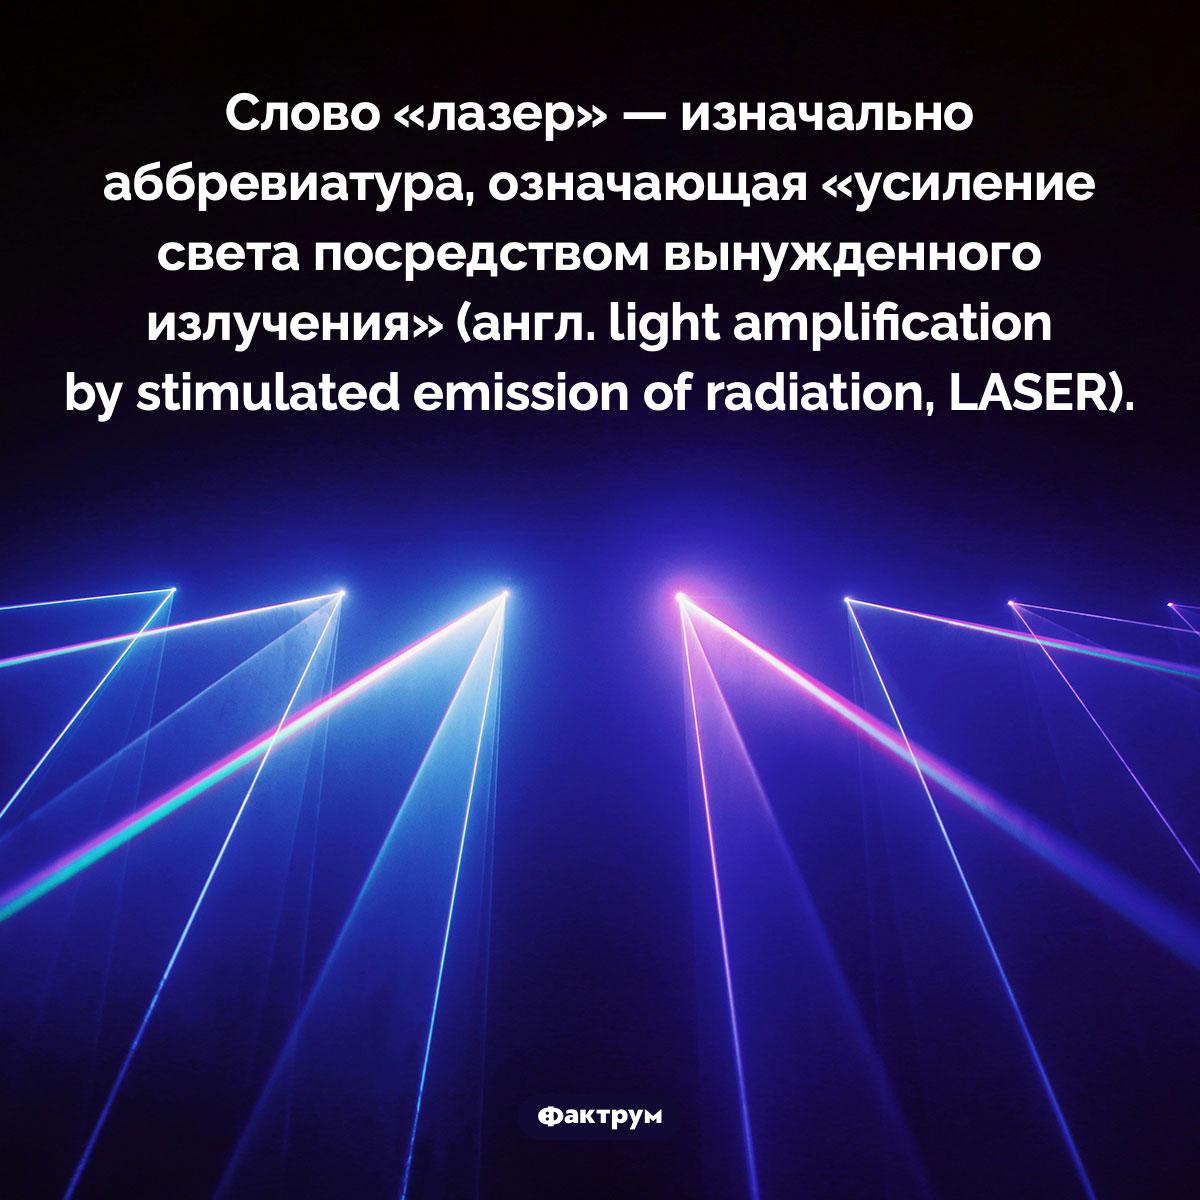 Лазер — это аббревиатура. Слово «лазер» — изначально аббревиатура, означающая «усиление света посредством вынужденного излучения» (англ. light amplification by stimulated emission of radiation, LASER).